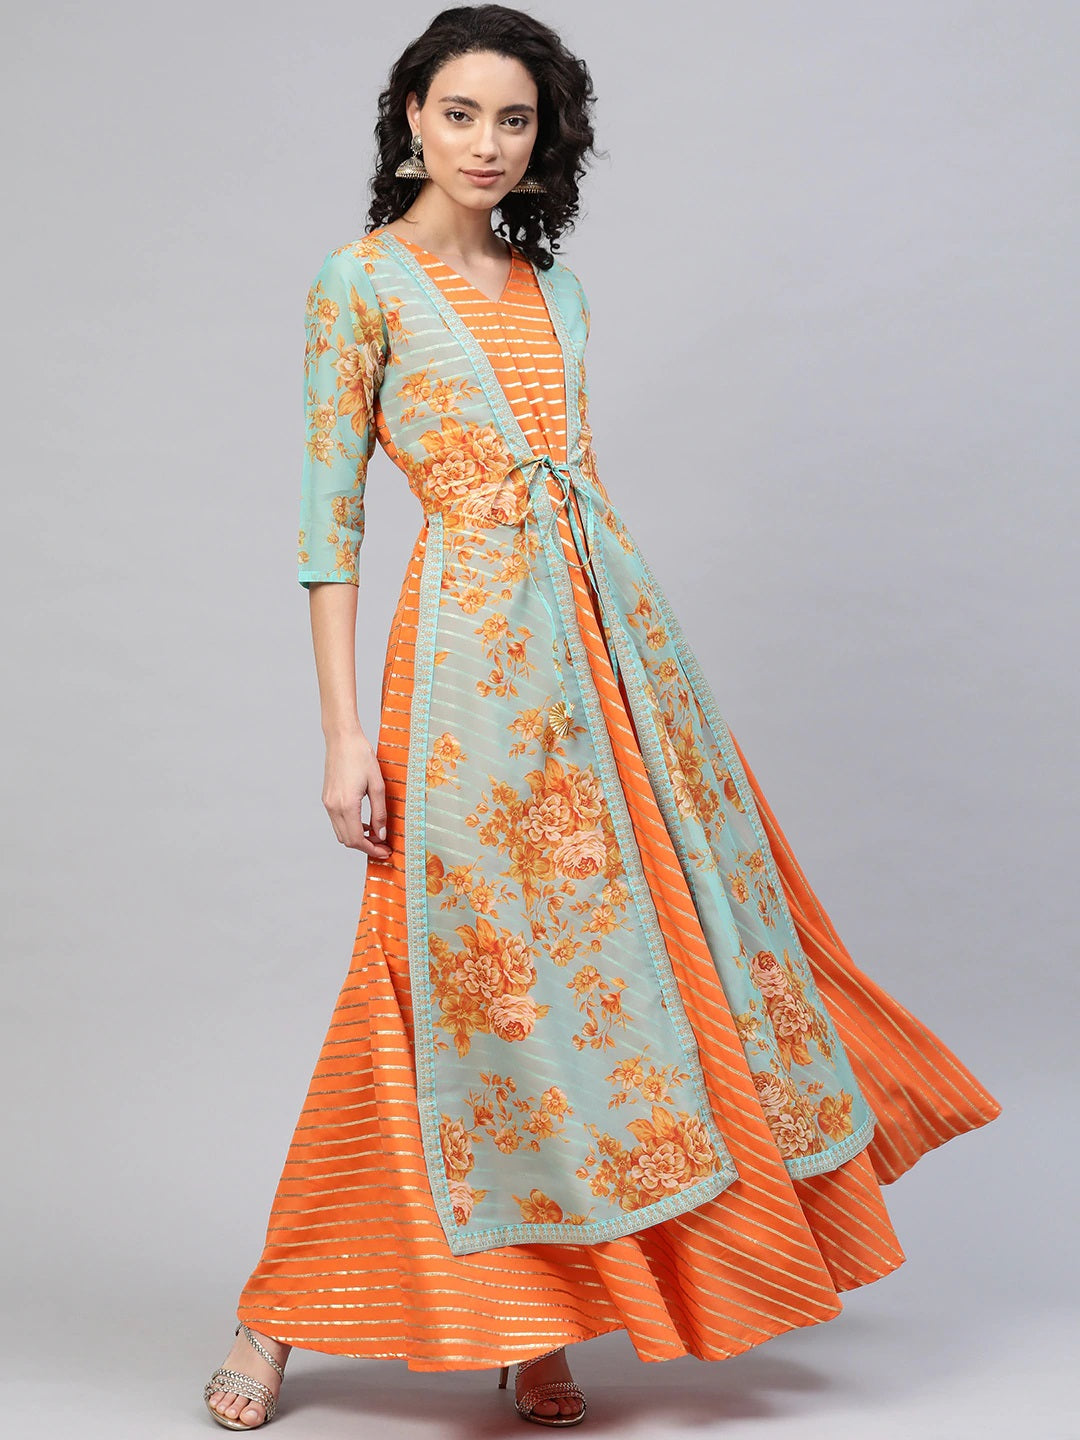 Orange & Gold Ethnic Layered Dress